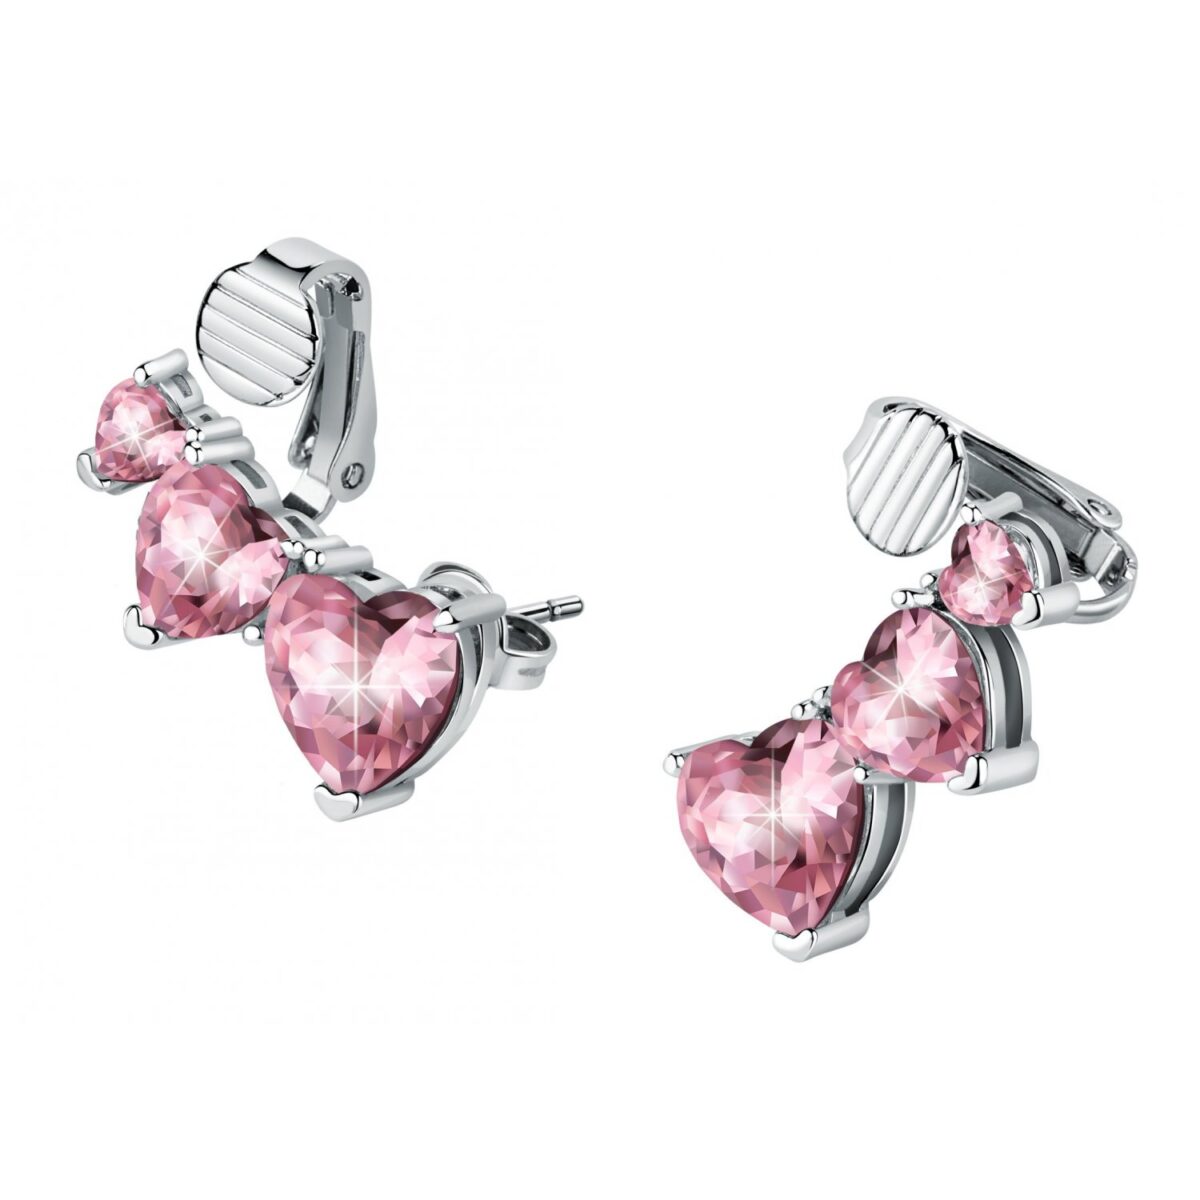 Orecchini Donna Chiara Ferragni Brand Diamond Heart Semipendenti Rosa